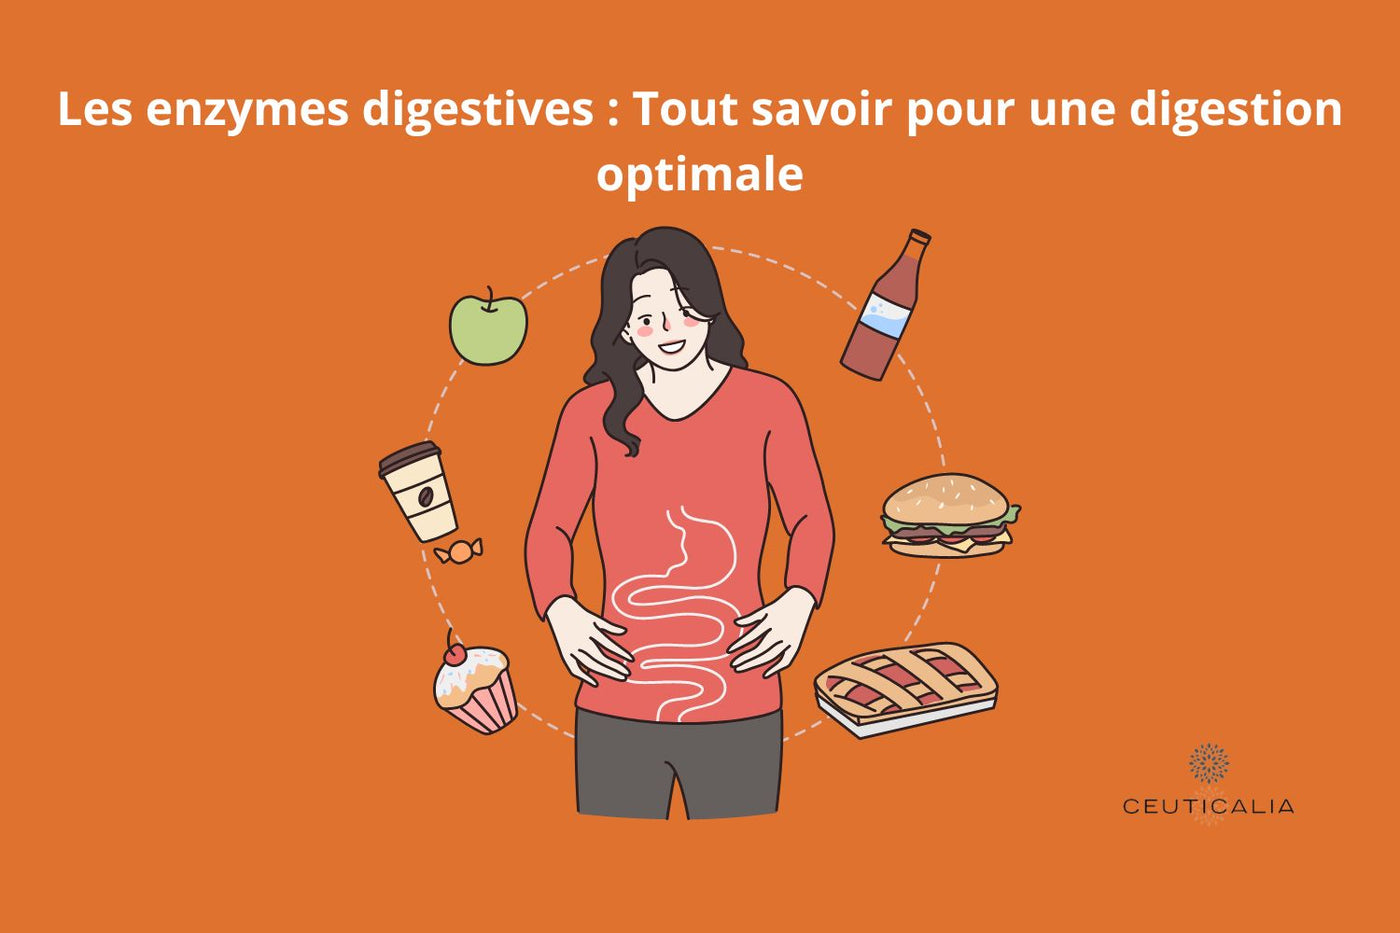 Les enzymes digestives : Tout savoir pour une digestion optimale